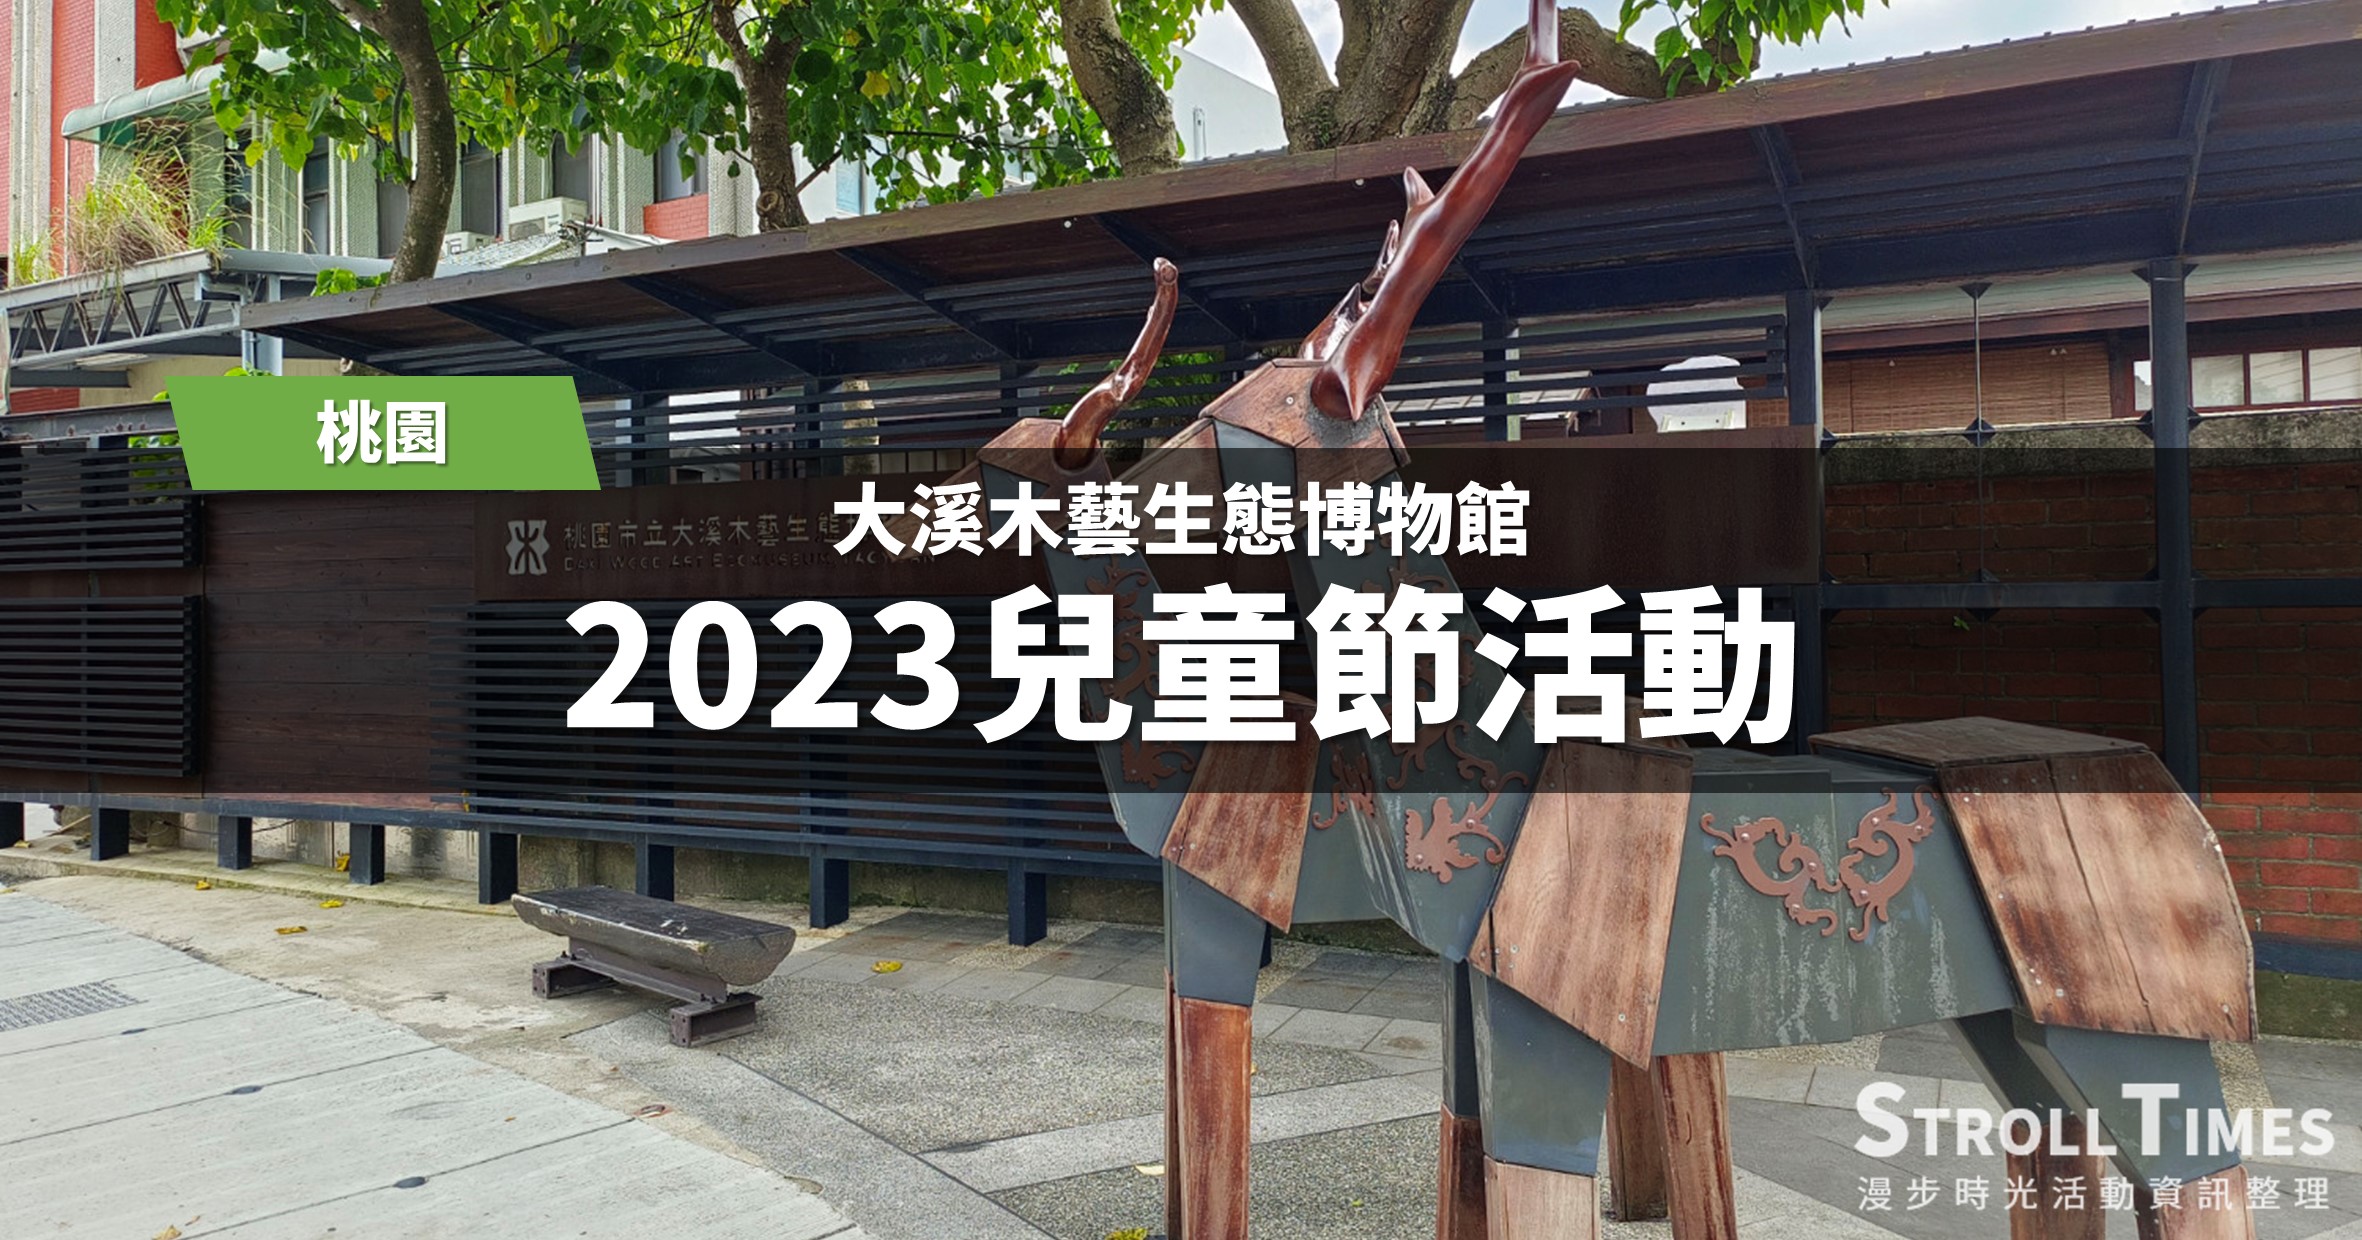 桃園活動》大溪木藝生態博物館2023兒童節活動